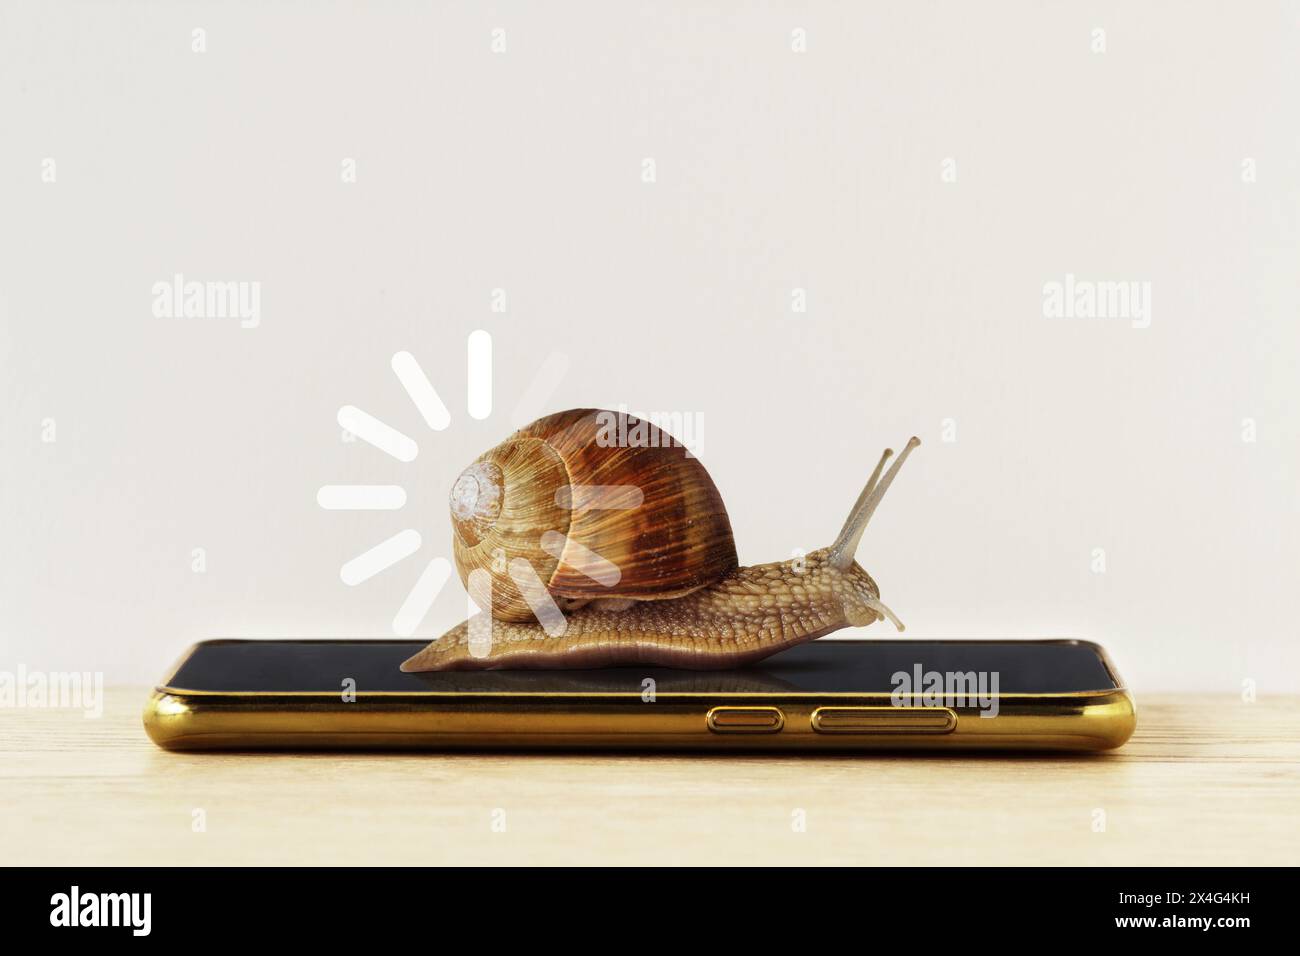 Escargot avec signe de chargement sur smartphone - concept de vitesse Internet lente et barre de chargement de progression lente Banque D'Images